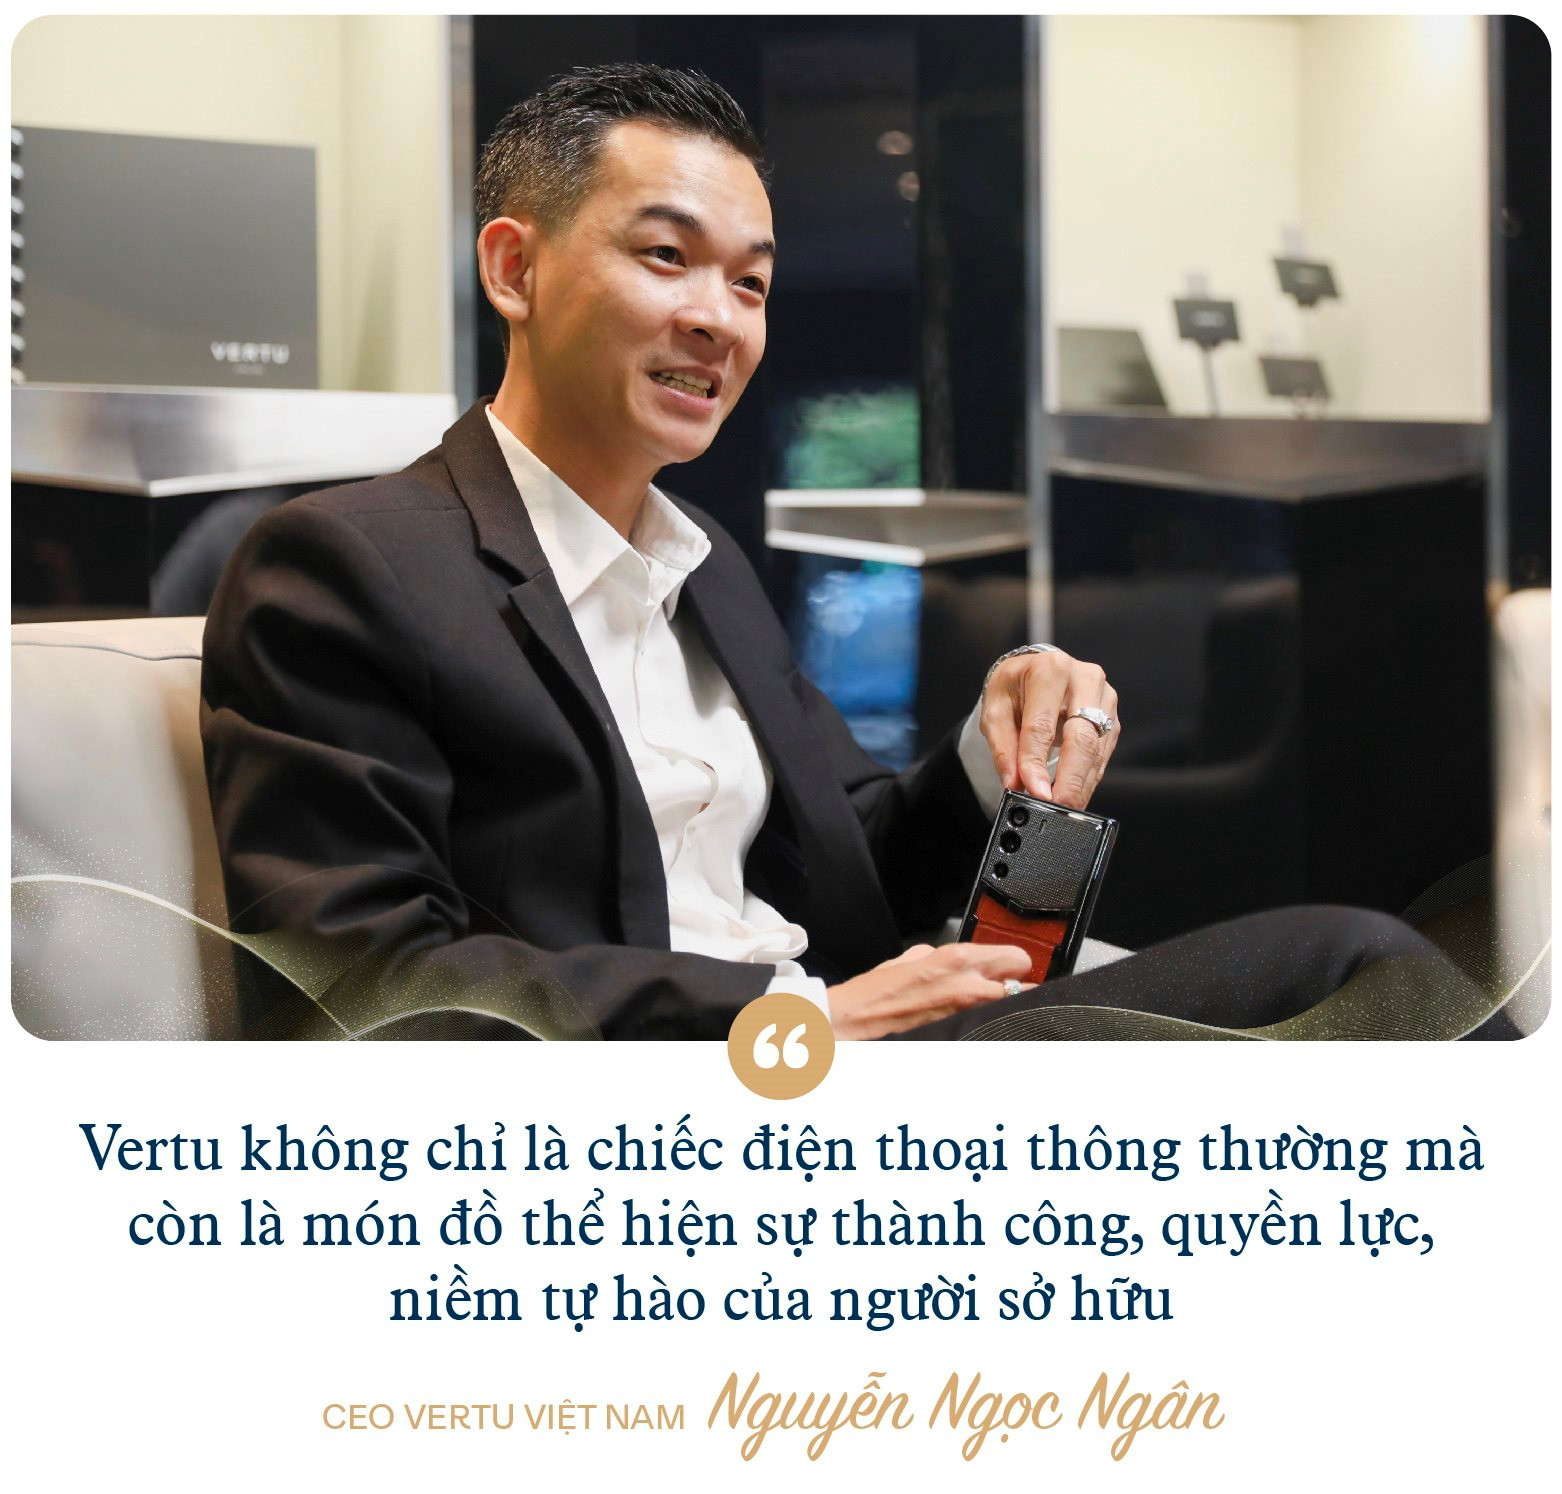 CEO Vertu Việt Nam: 'Điện thoại siêu sang vẫn bán chạy, dù kinh tế khó khăn đến mấy' - Ảnh 5.